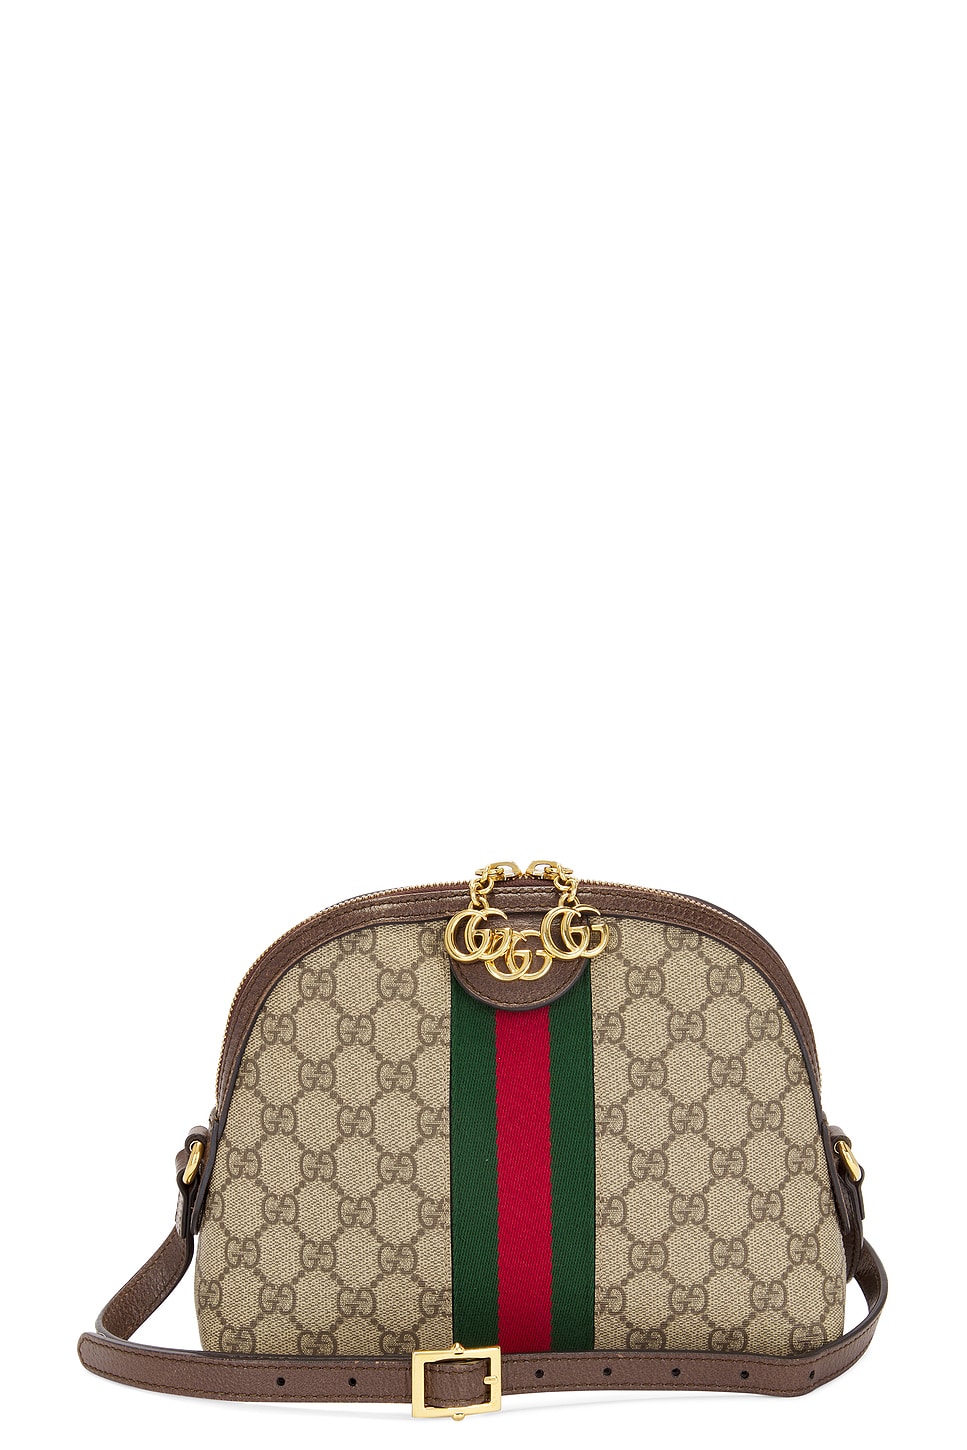 Gucci Gg Supreme Shoulder Bag In Beige